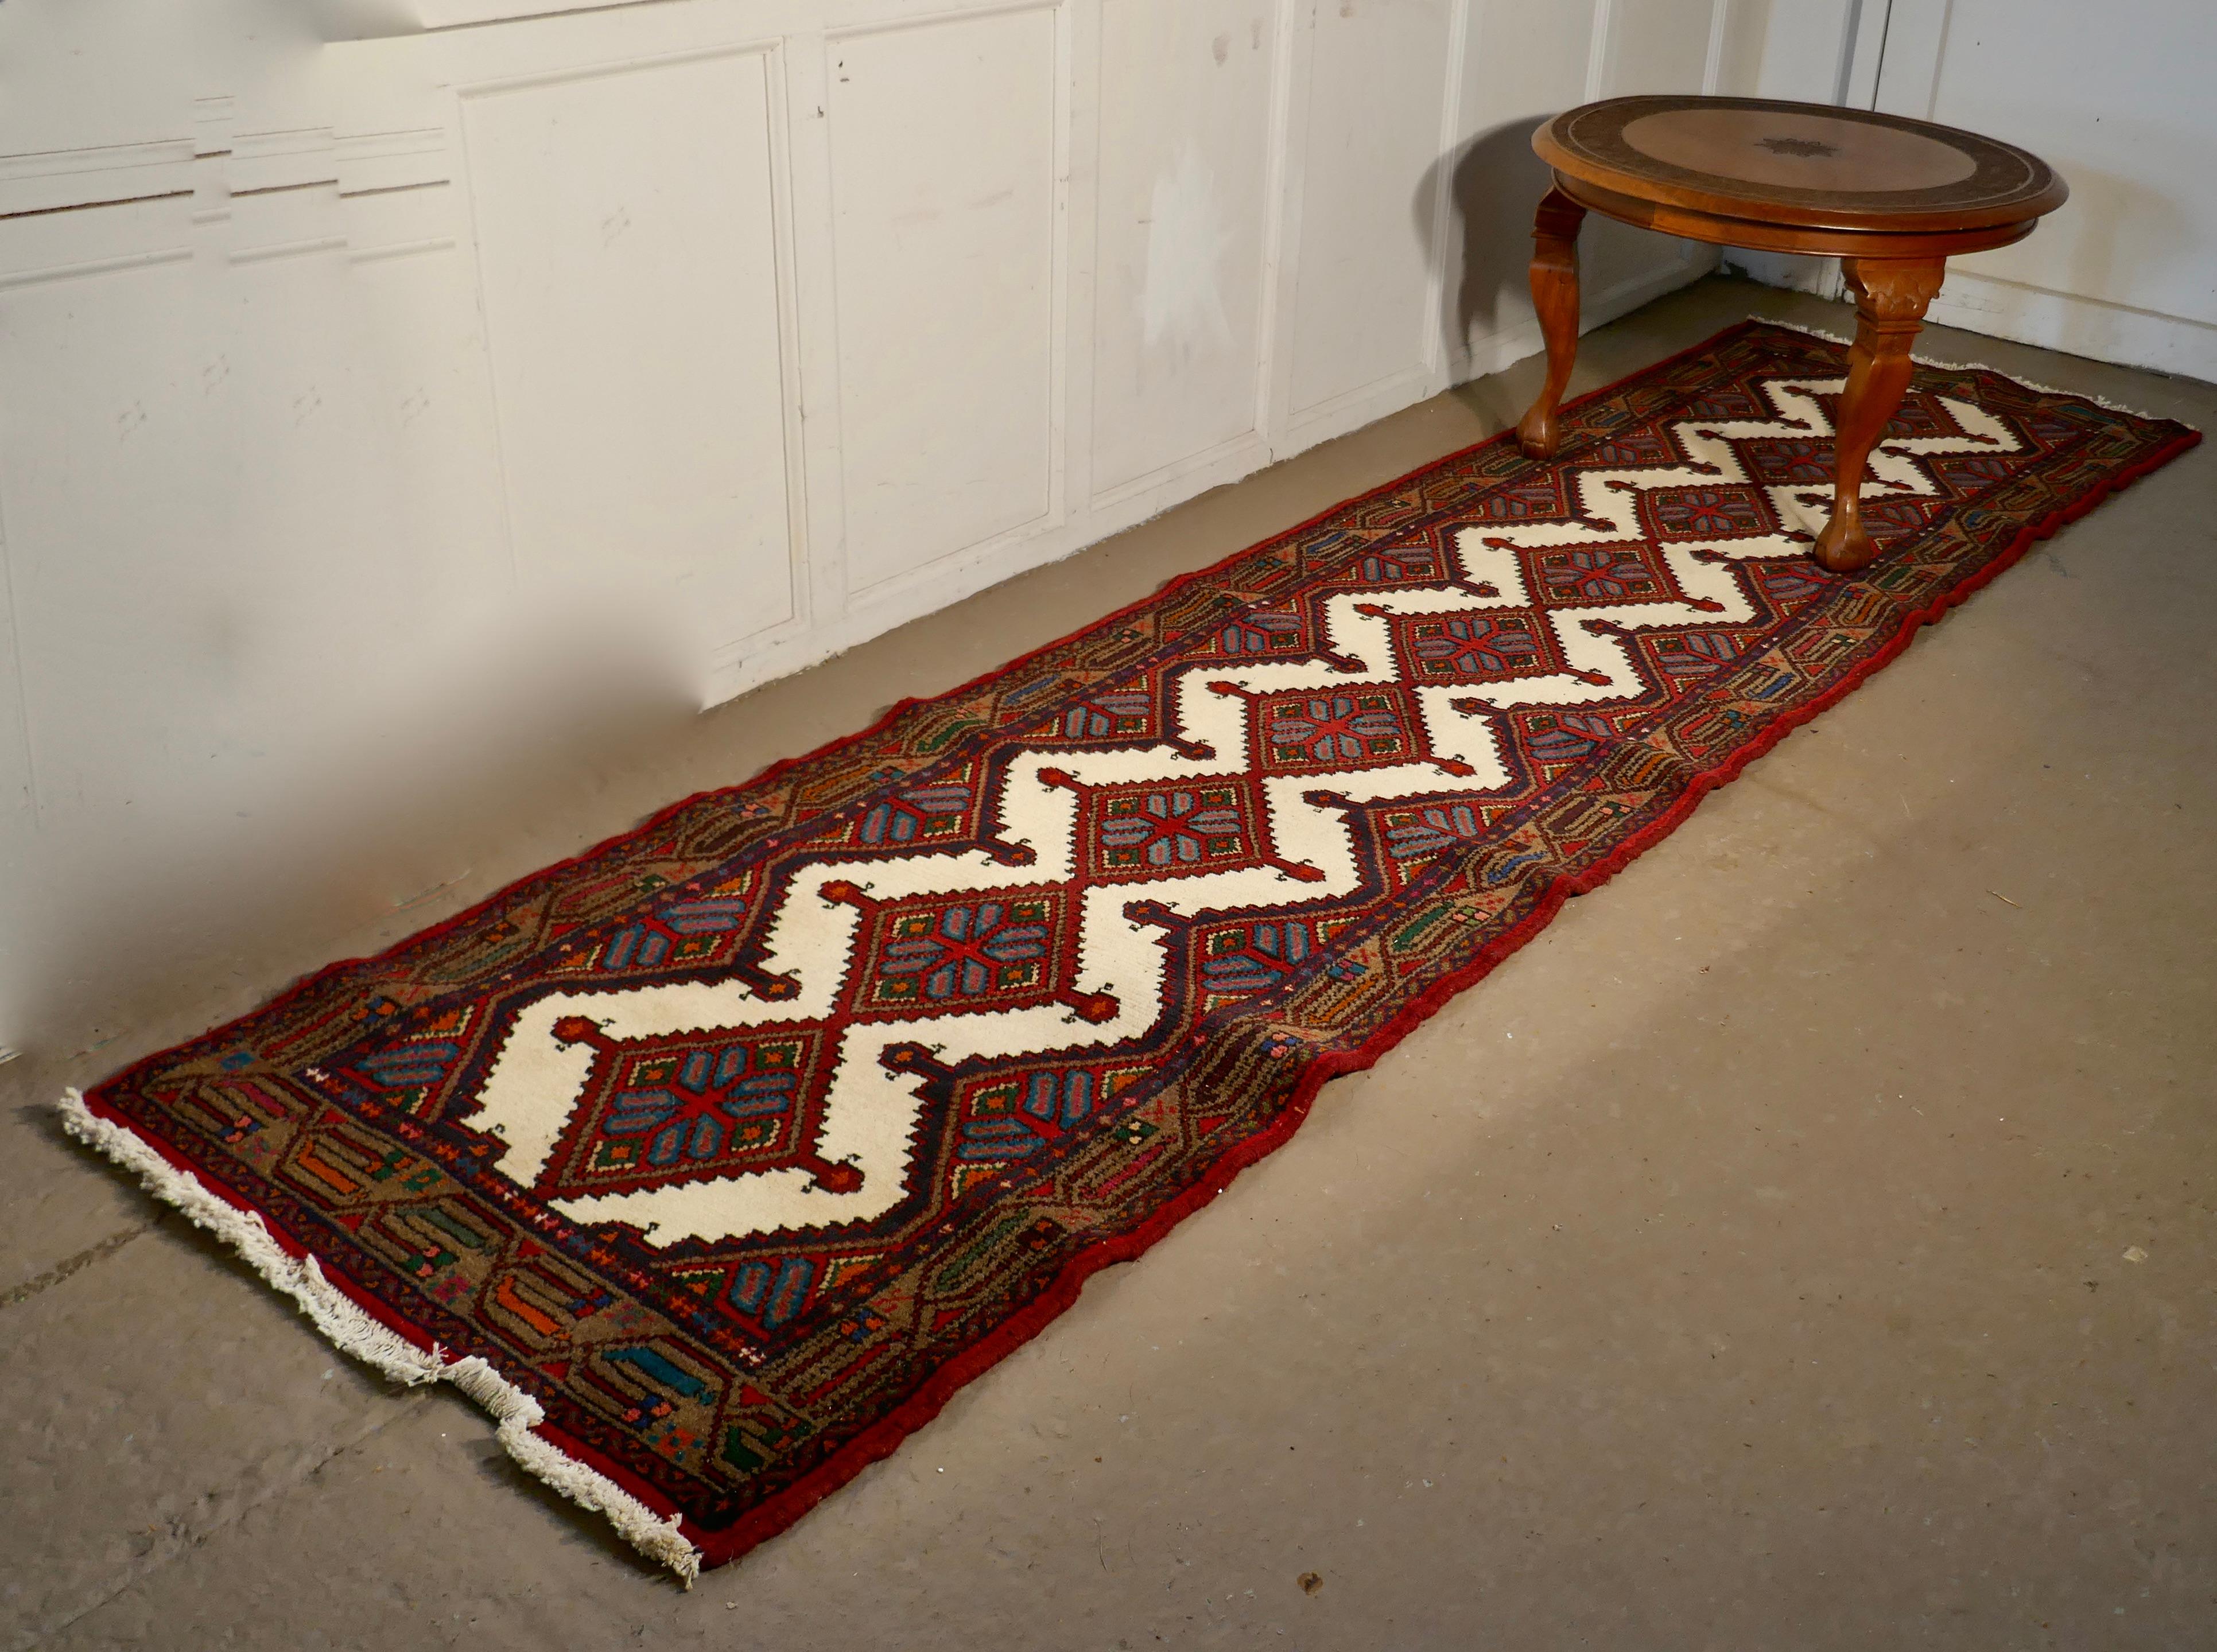 Vintage Hand Woven Persian 10ft Carpet Runner

Une pièce superbe datant d'environ 1930, avec une belle palette de couleurs, rouge profond, écru, bleu et orange
La coulisse en laine comporte 5 losanges sur sa longueur, avec des franges écrues aux